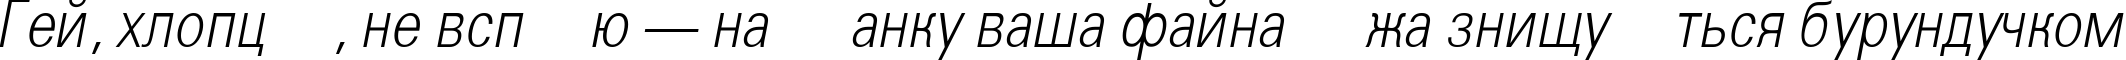 Пример написания шрифтом a_GroticLtNr Italic текста на украинском